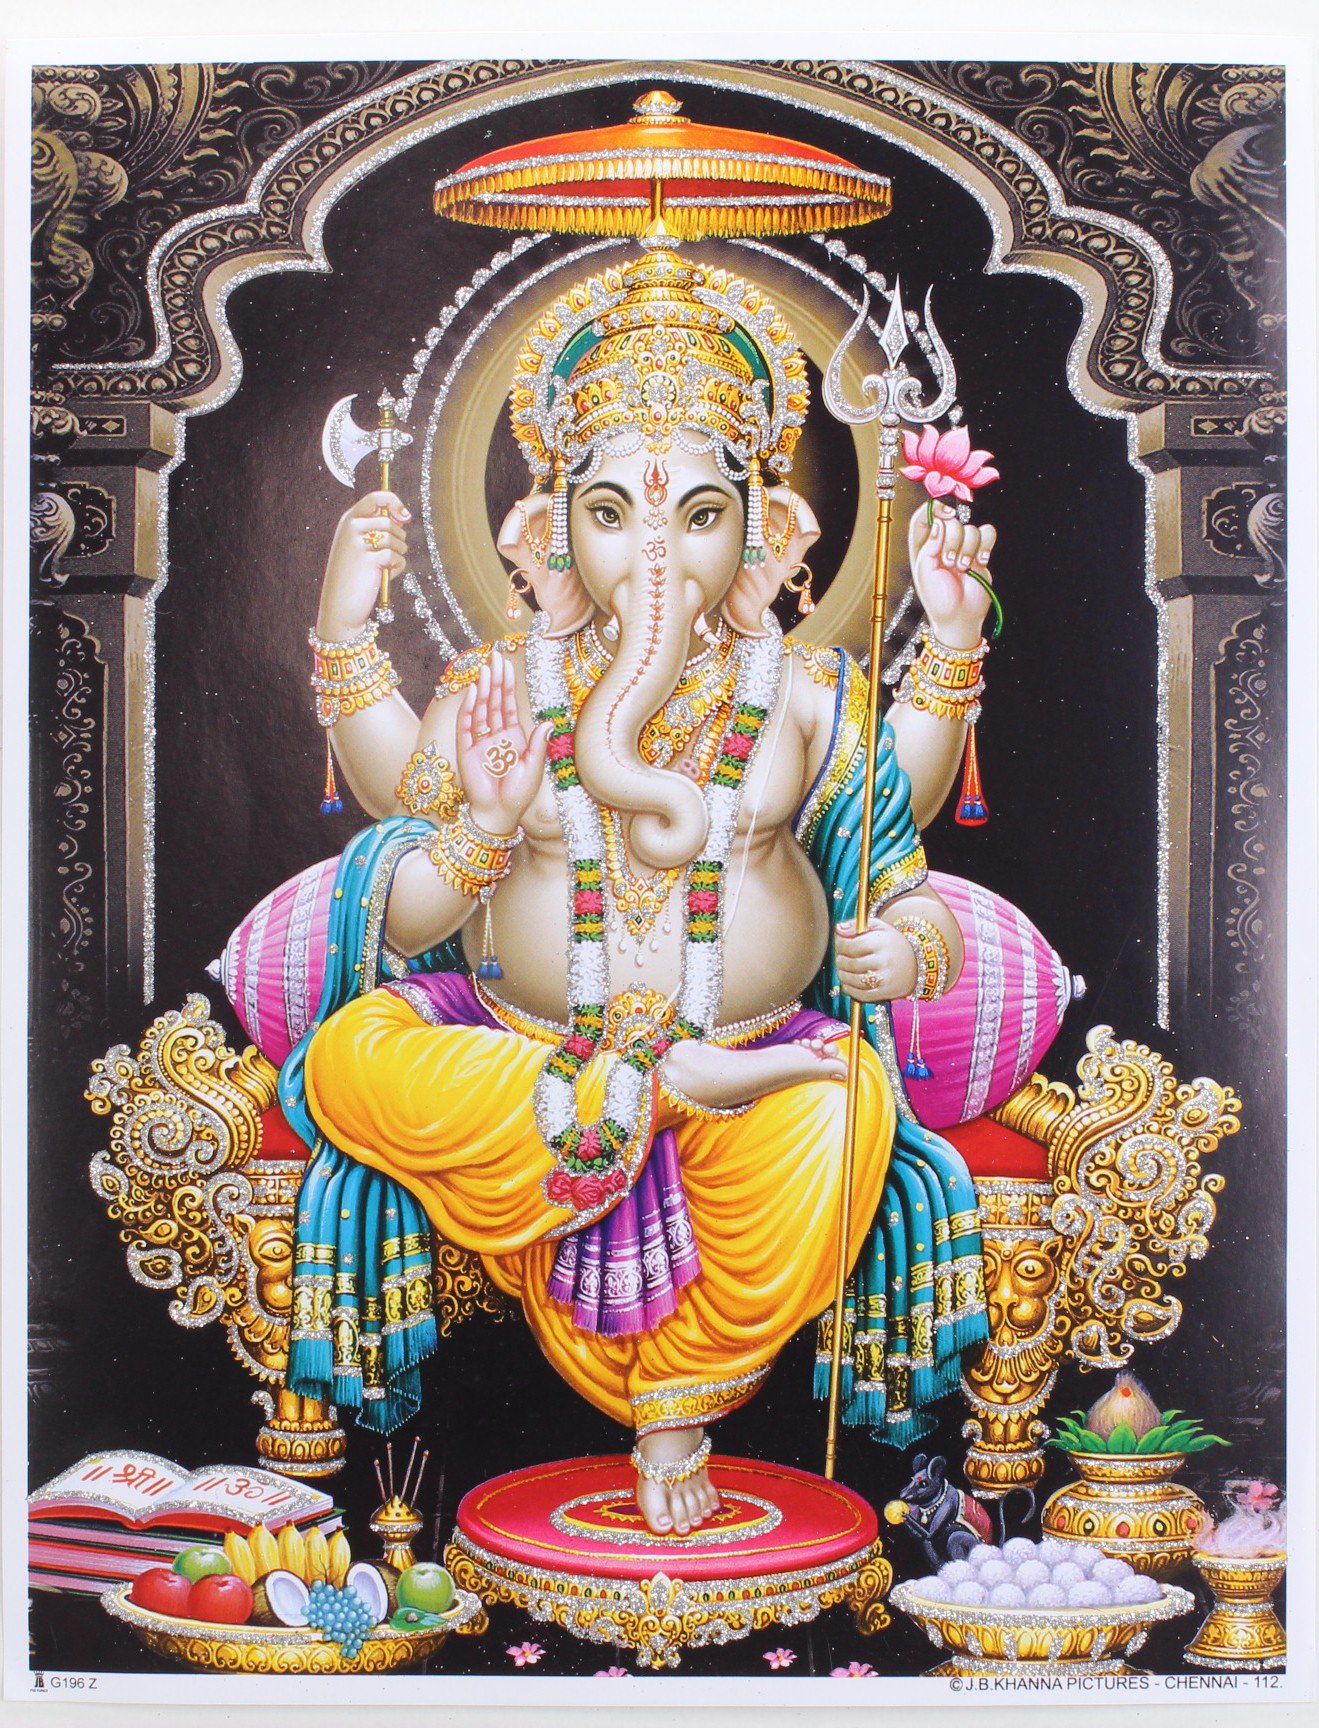 メール便送料無料対応可】 <br>インドの神様 ガネーシャ神<br>ポスター A4×1枚<br>India God<br>Poster  A4×1sht<br>